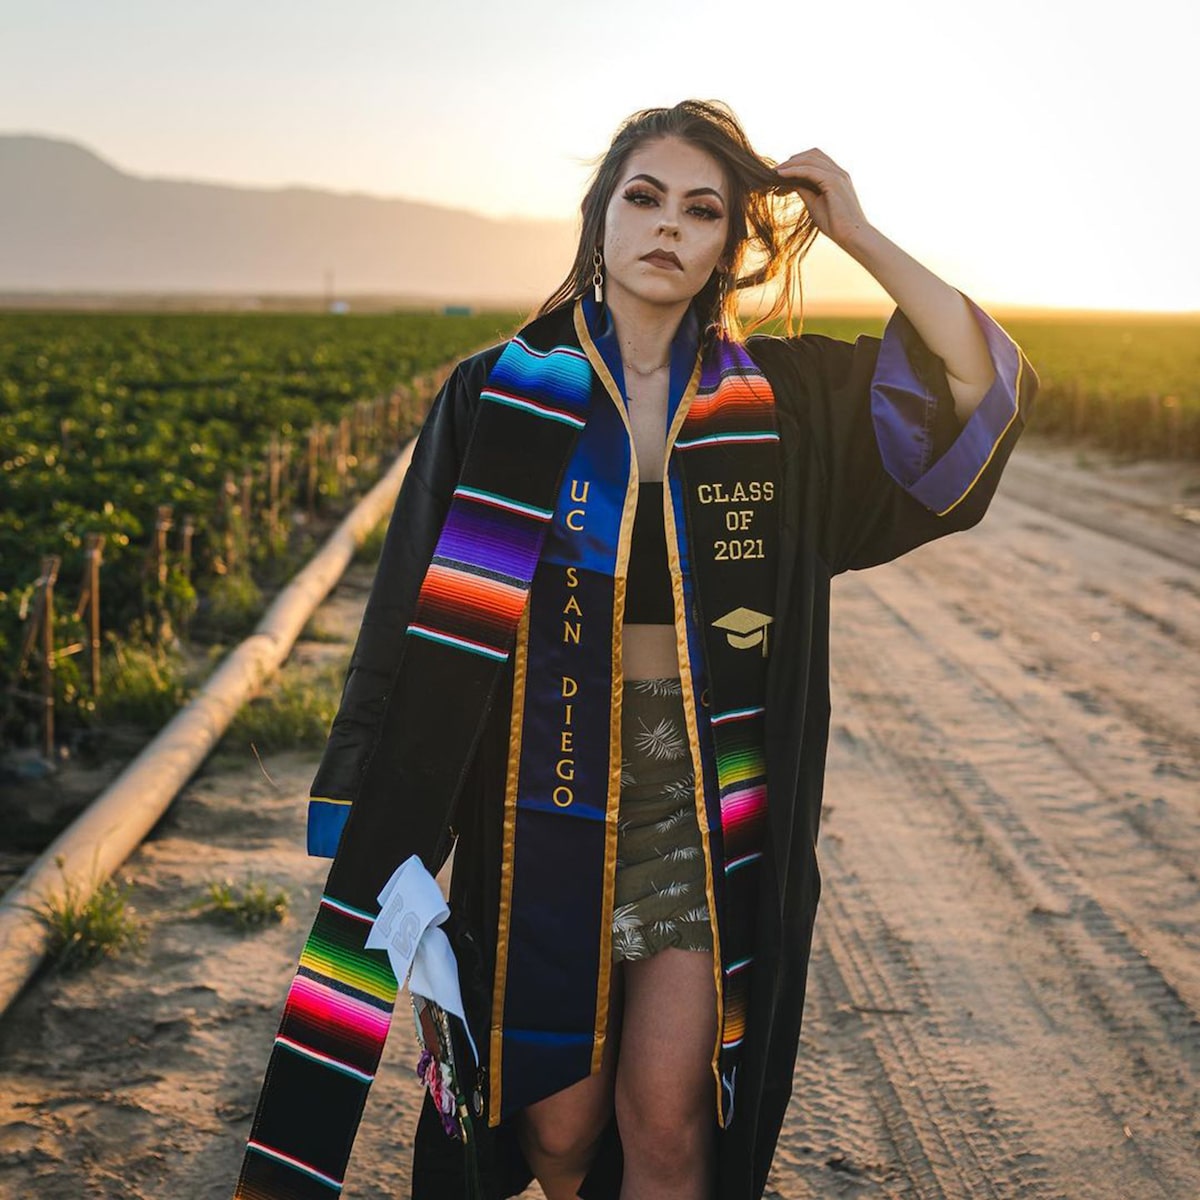 Jennifer Rocha Dressed in College Graduation Outfit in Field